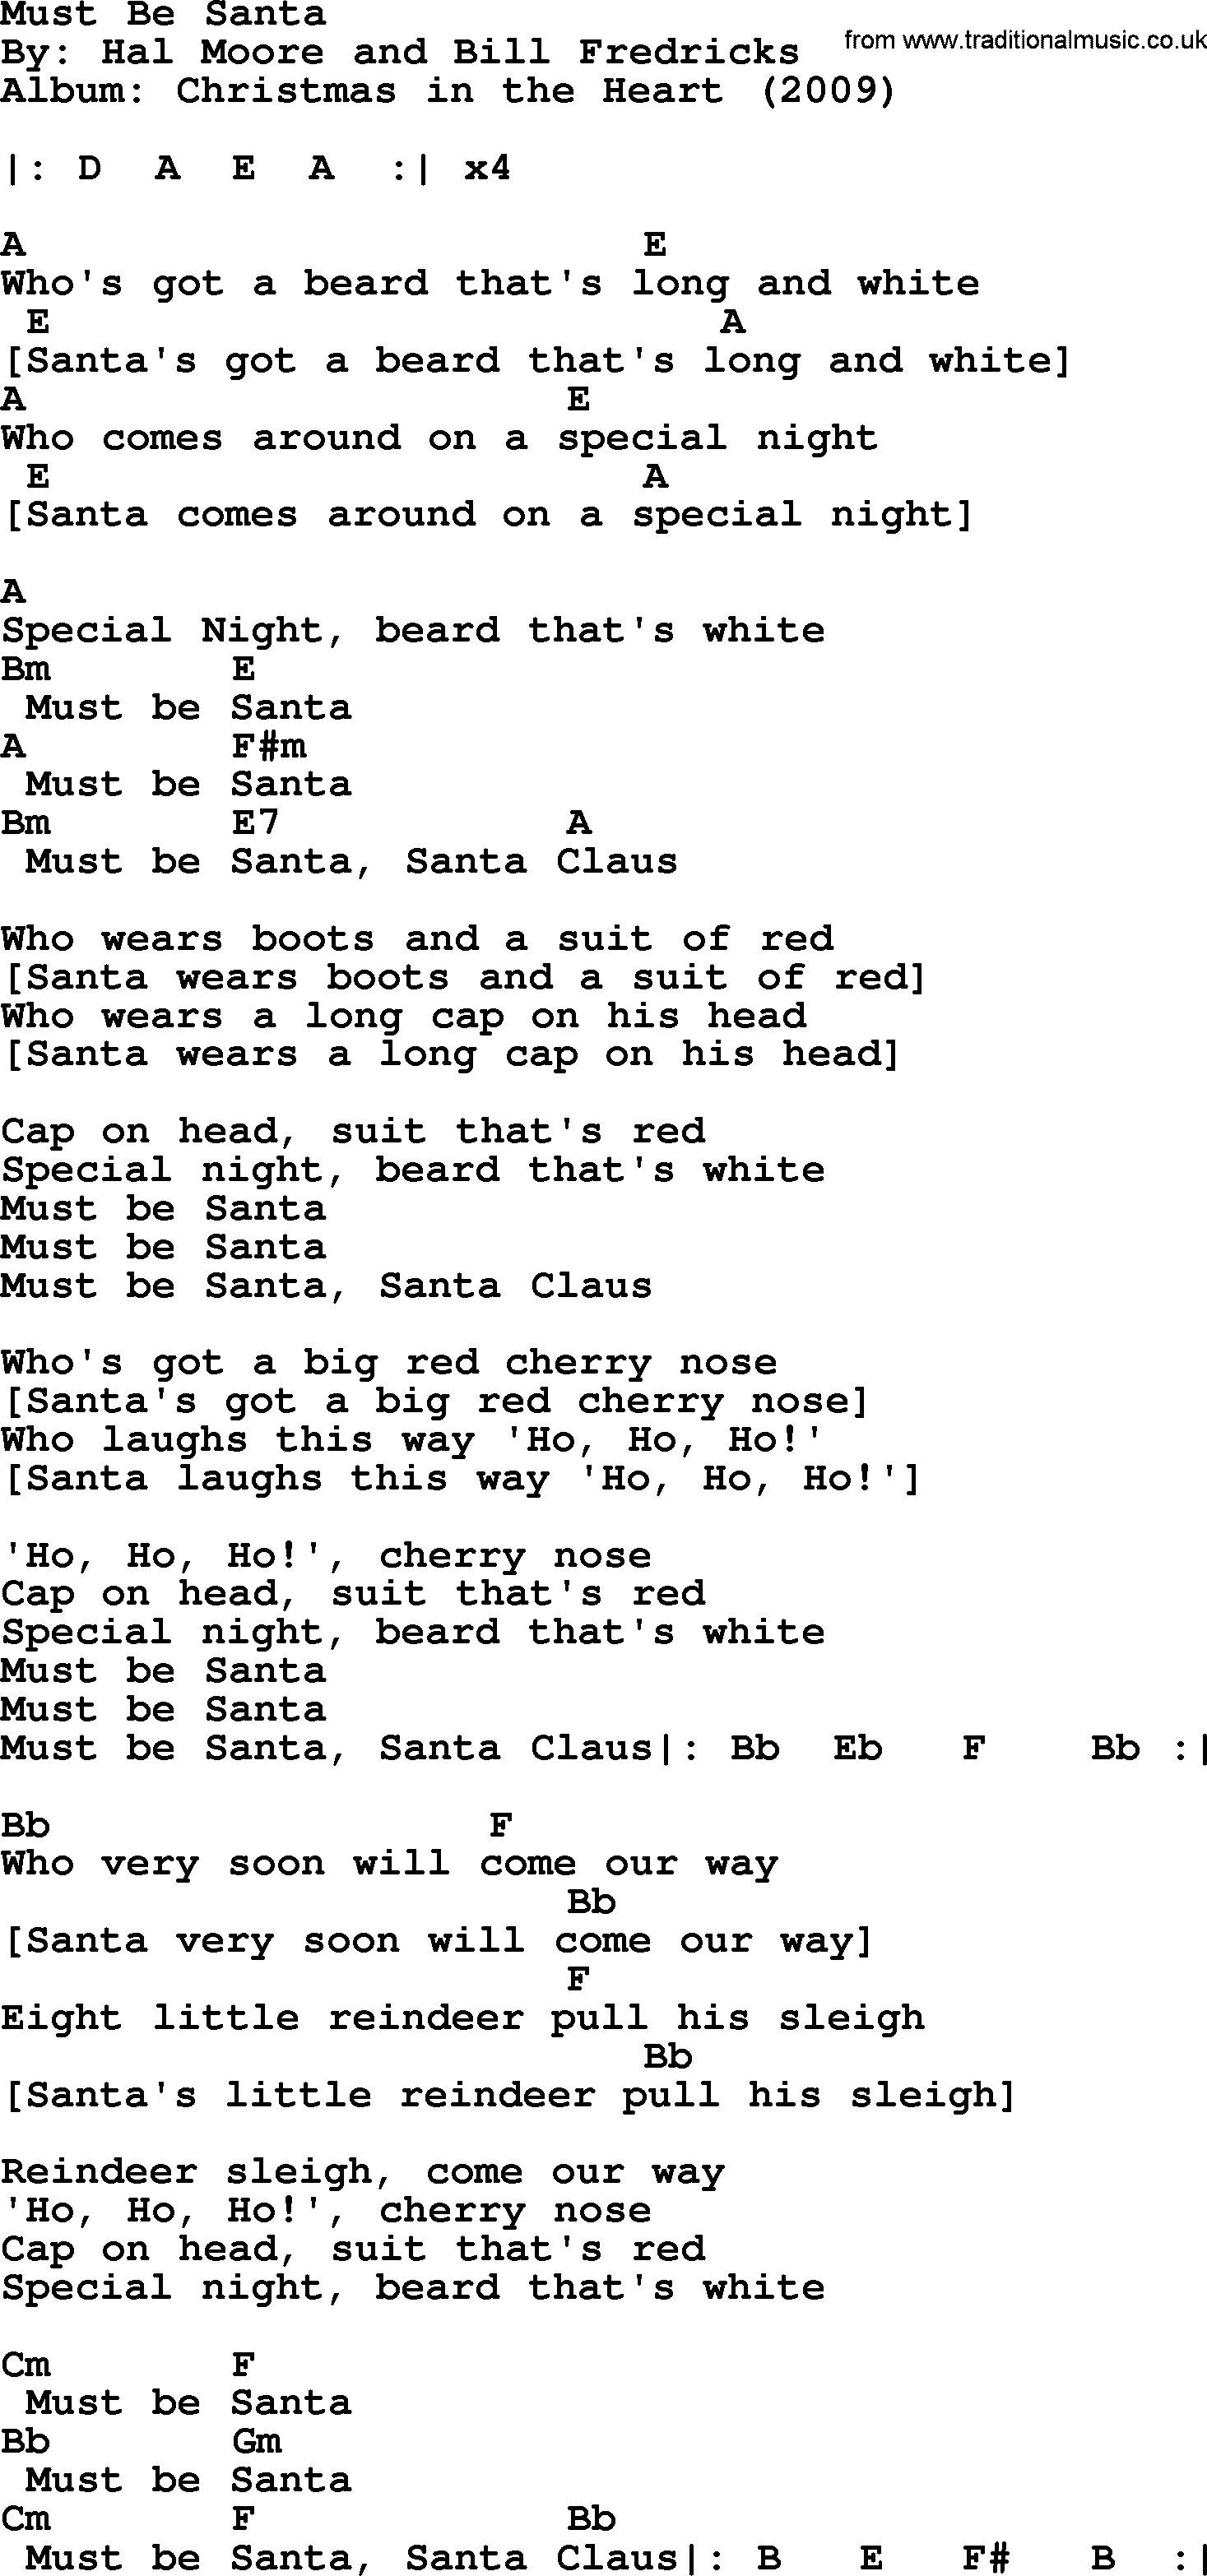 Bob Dylan song, lyrics with chords - Must Be Santa